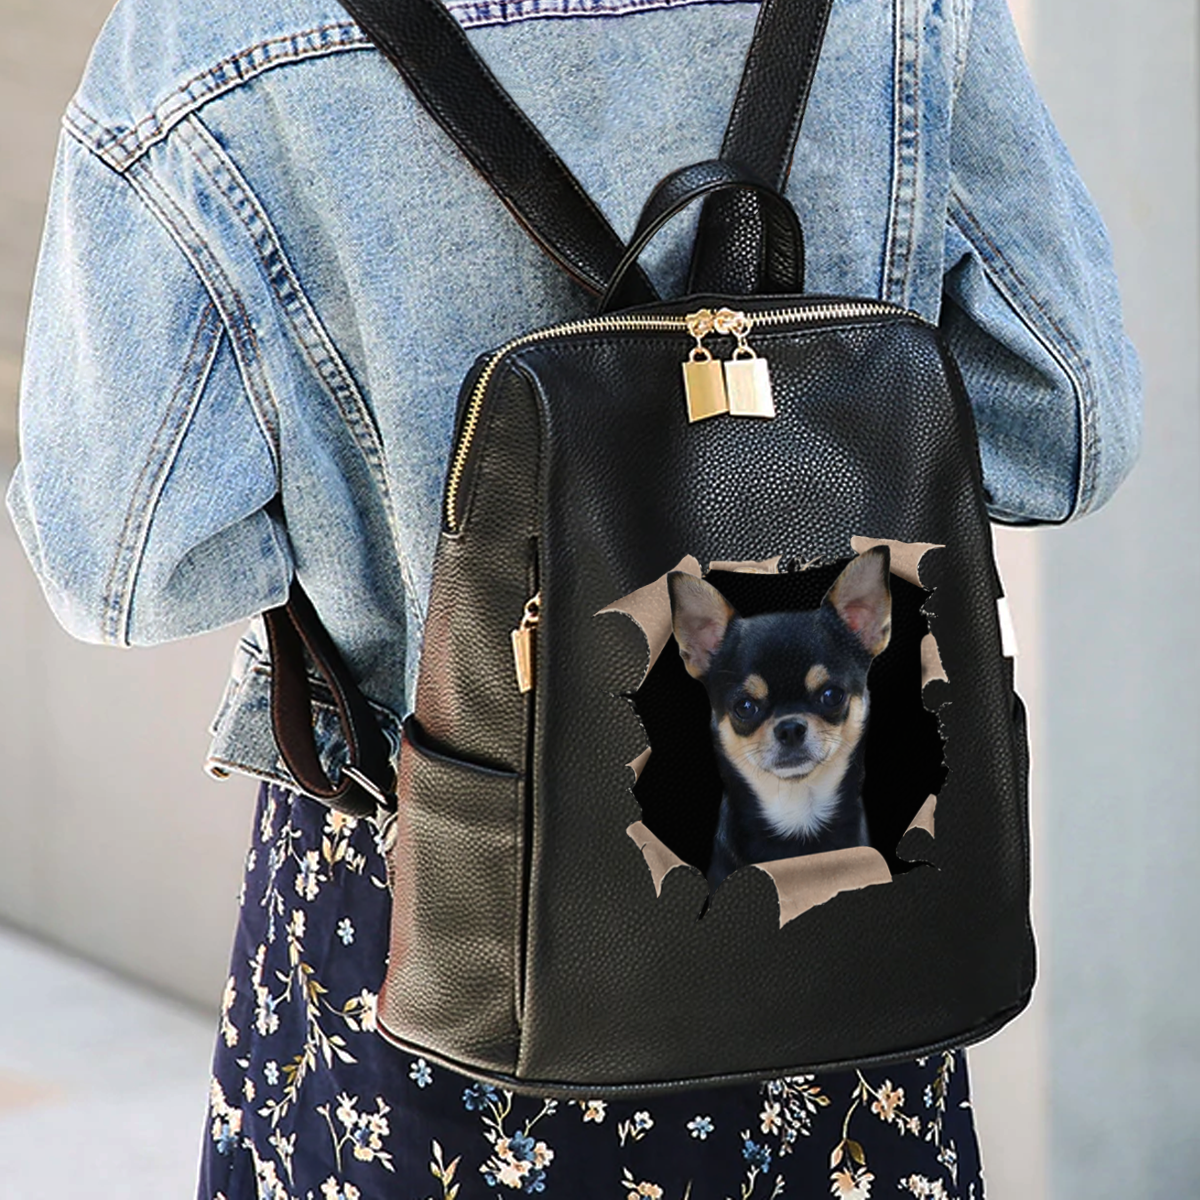 Gemeinsam ausgehen – Personalisierter Rucksack mit dem Foto Ihres Haustieres V2